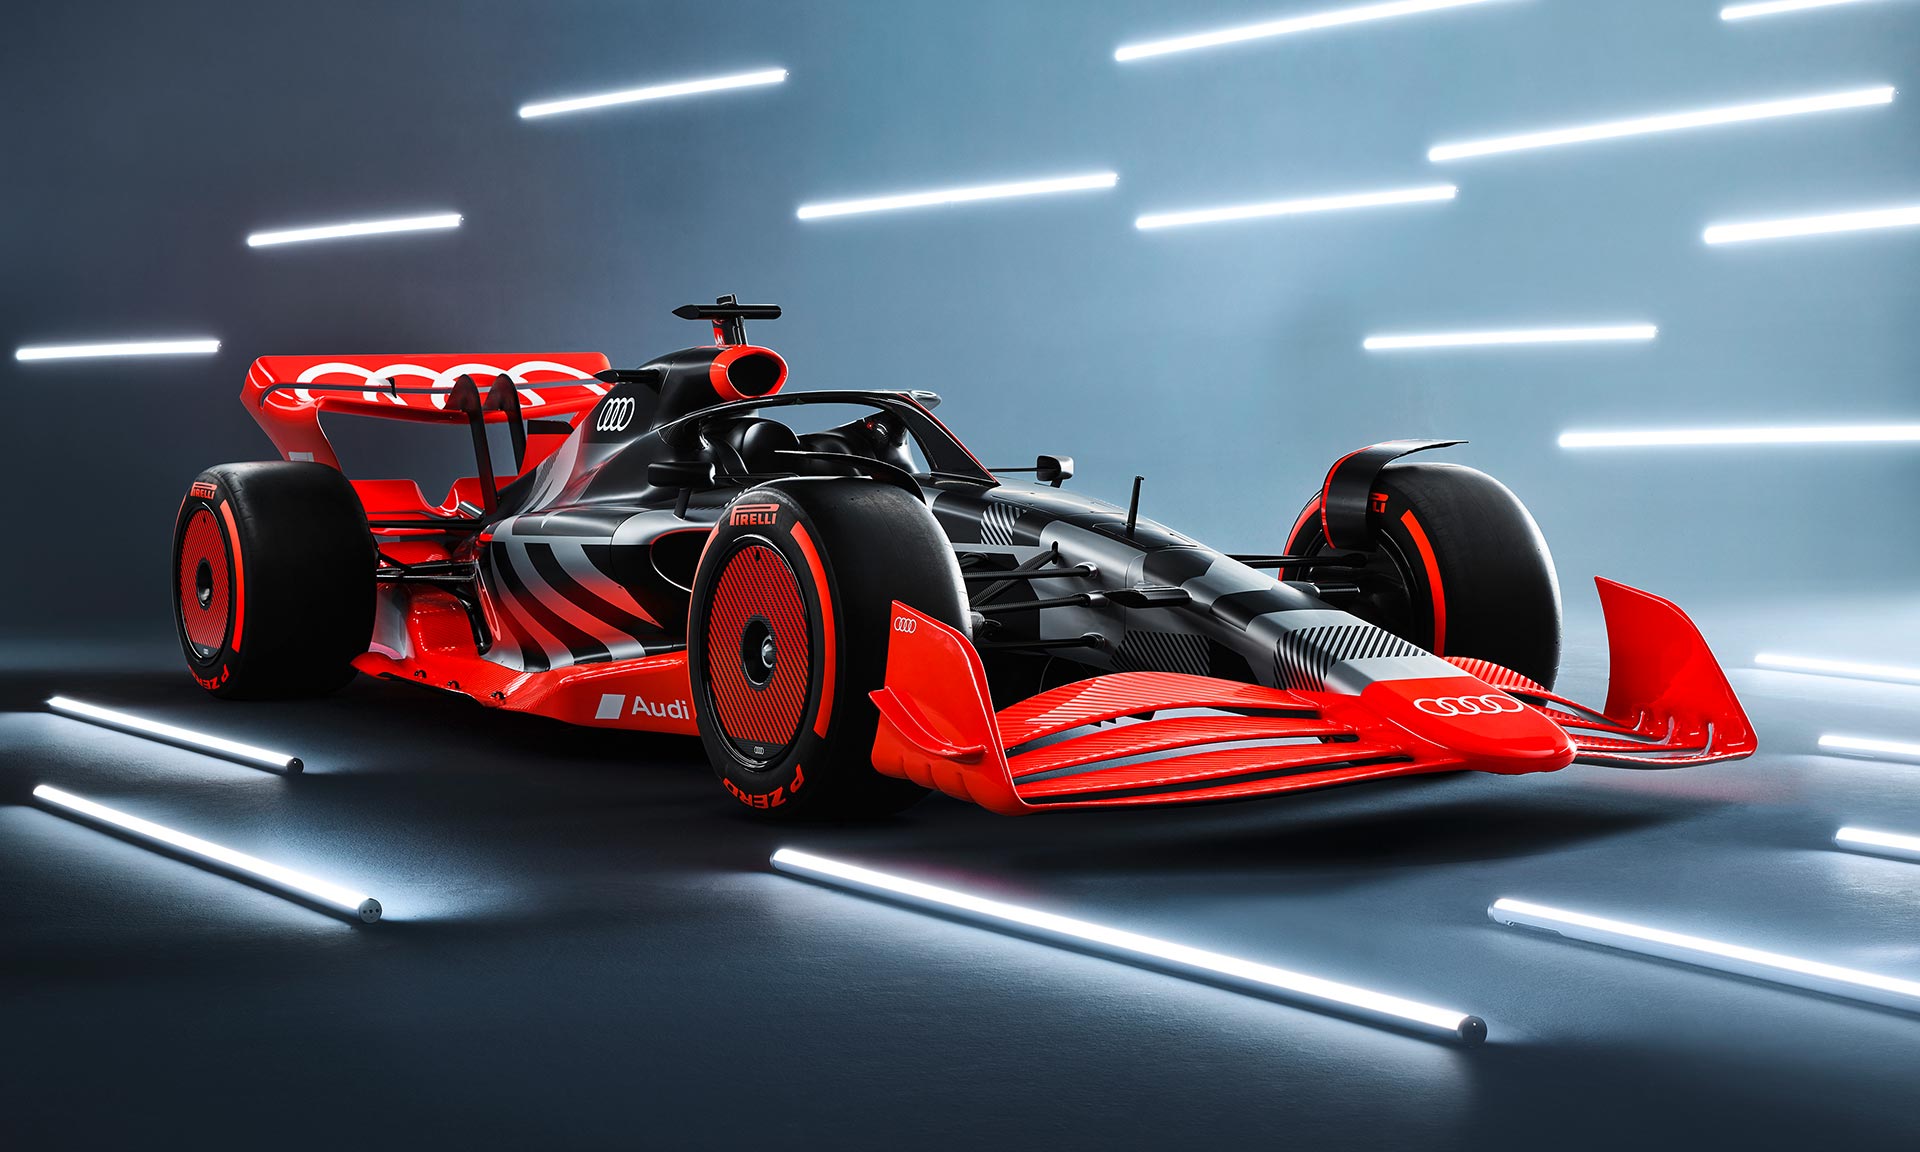 Audi ukazuje svůj monopost Formule 1 a potvrzuje vstup do nejvyšší soutěže motorsportu